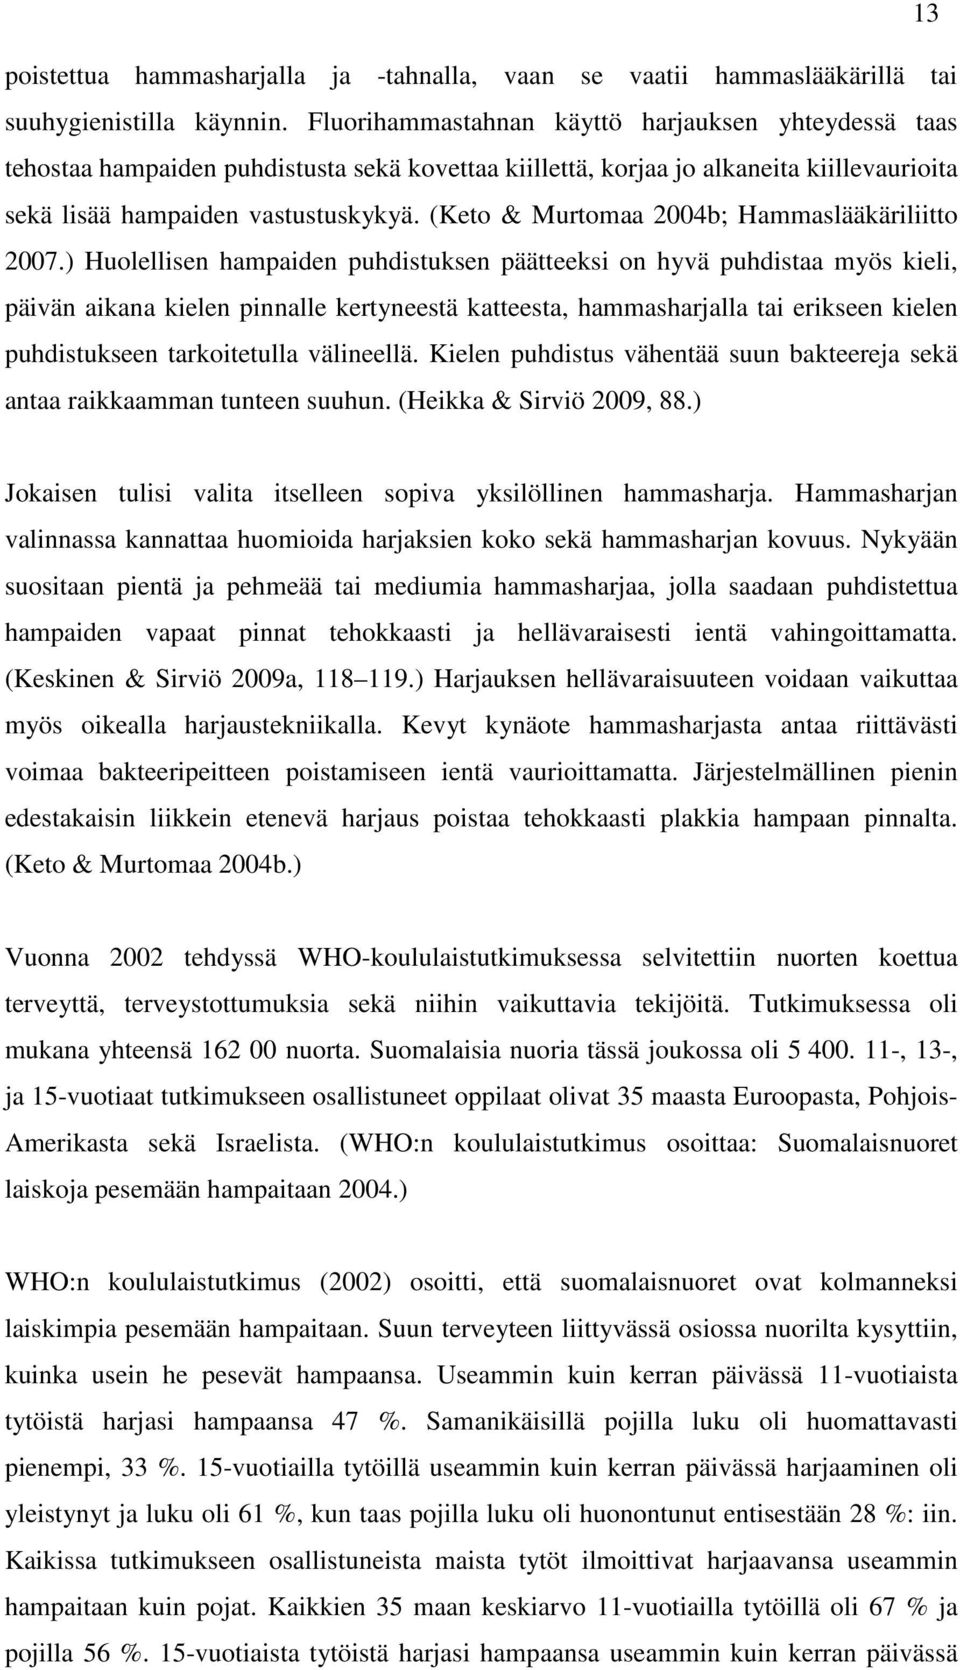 (Keto & Murtomaa 2004b; Hammaslääkäriliitto 2007.